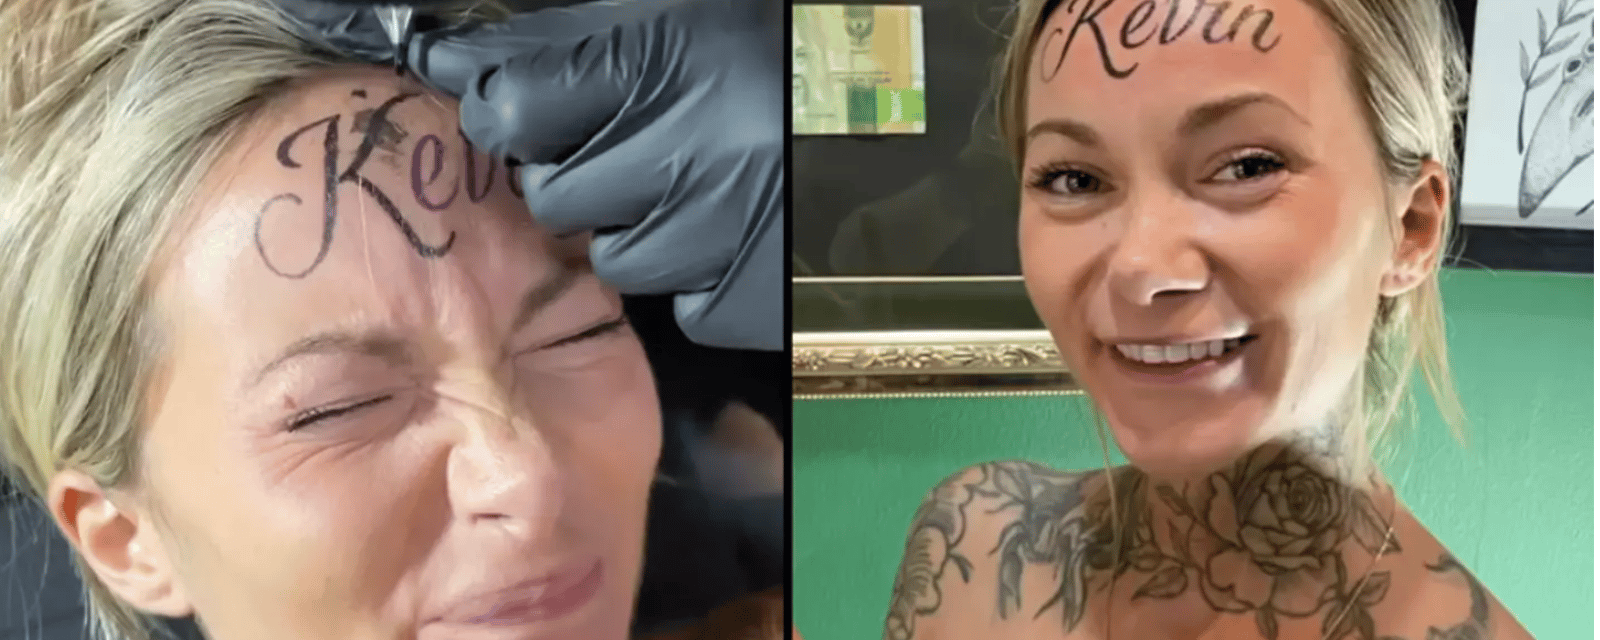 Une influenceuse se fait tatouer le prénom de son amoureux Kevin sur le front.